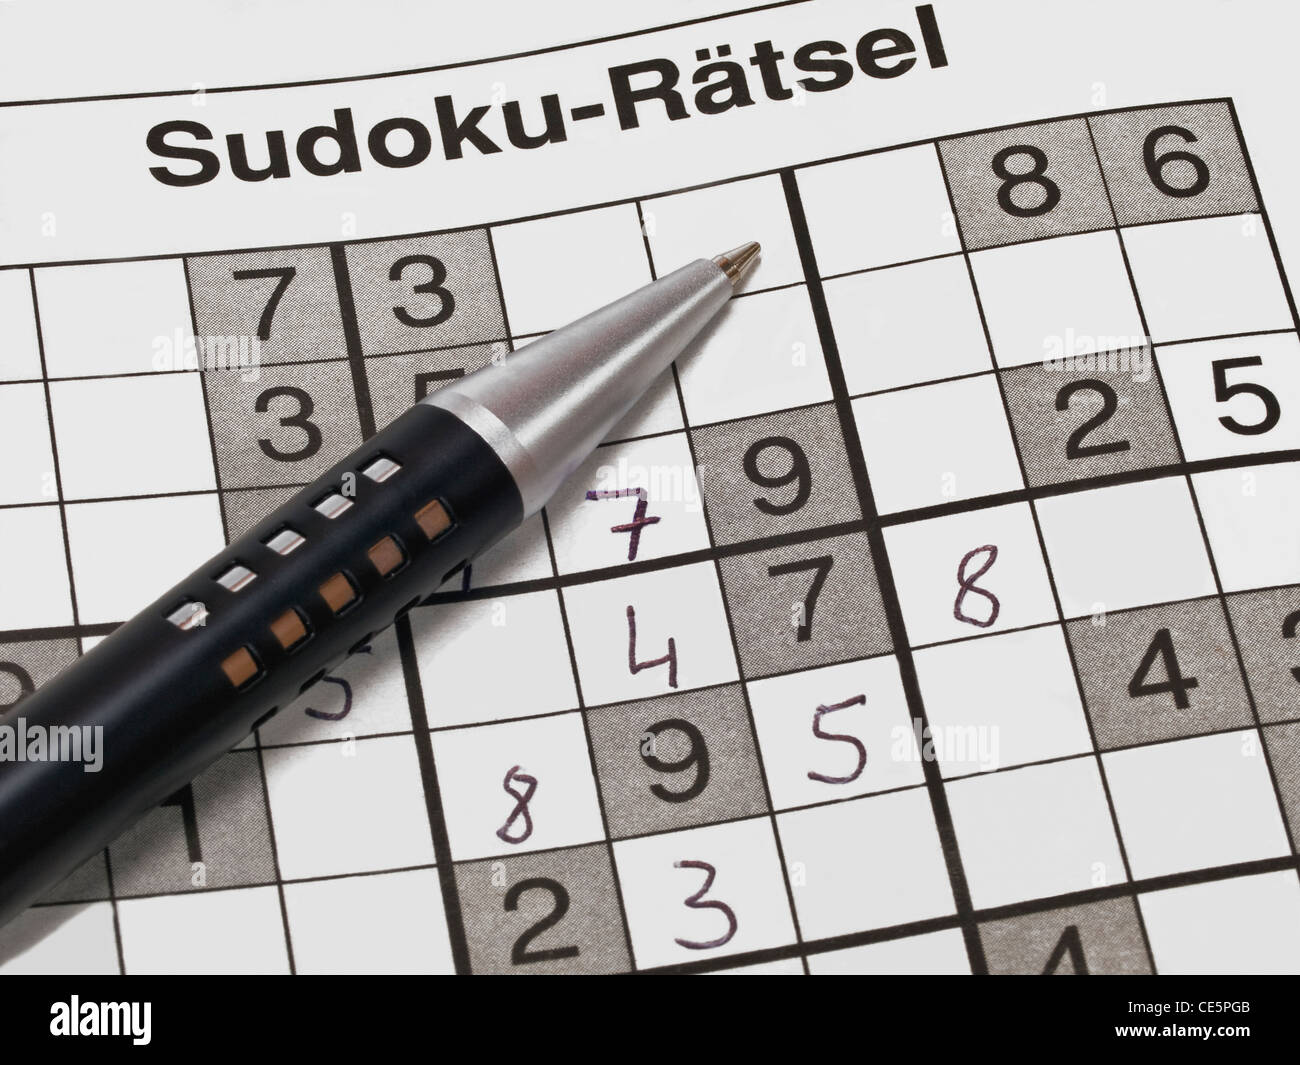 Detailansicht eines SUDOKU-Rätsels, dabei liegt ein Stift | Dettaglio foto di un SUDOKU-riddle, accanto è una penna Foto Stock